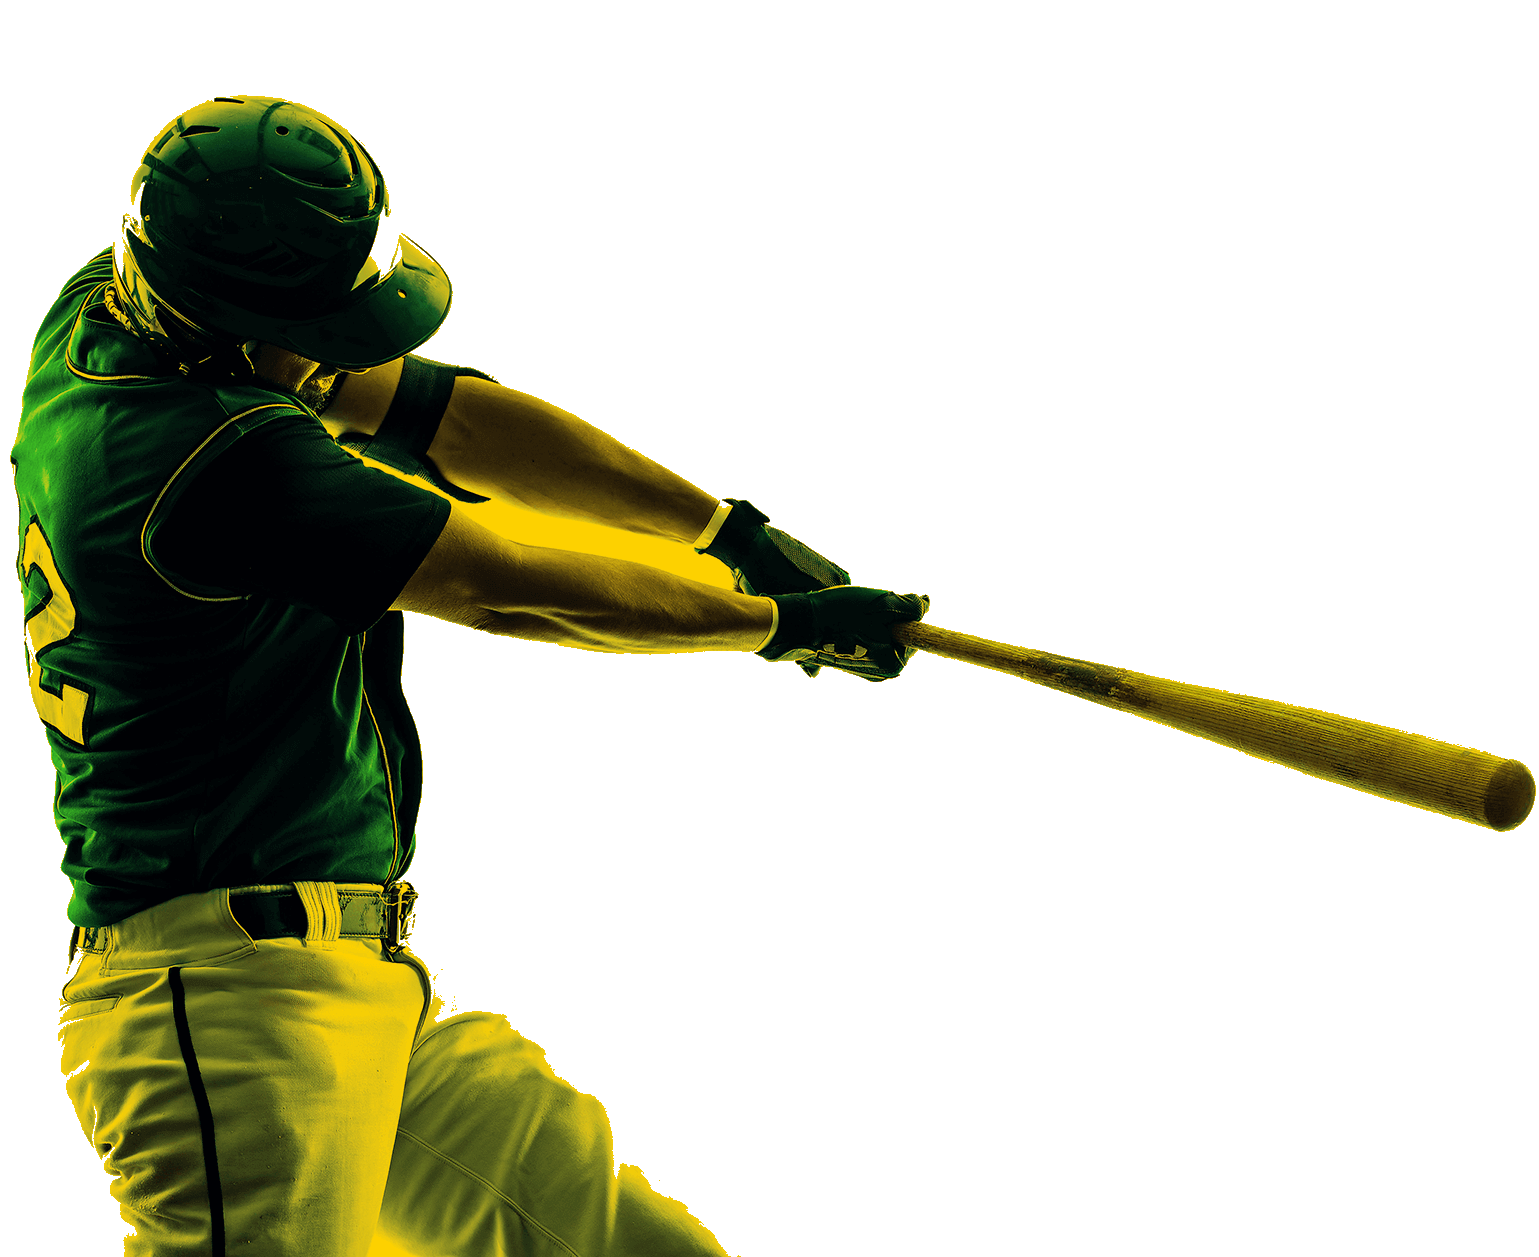 En la primera imagen, un beisbolista extiende sus brazos para batear la pelota. Está de espaldas, su ropa es verde y gris. 